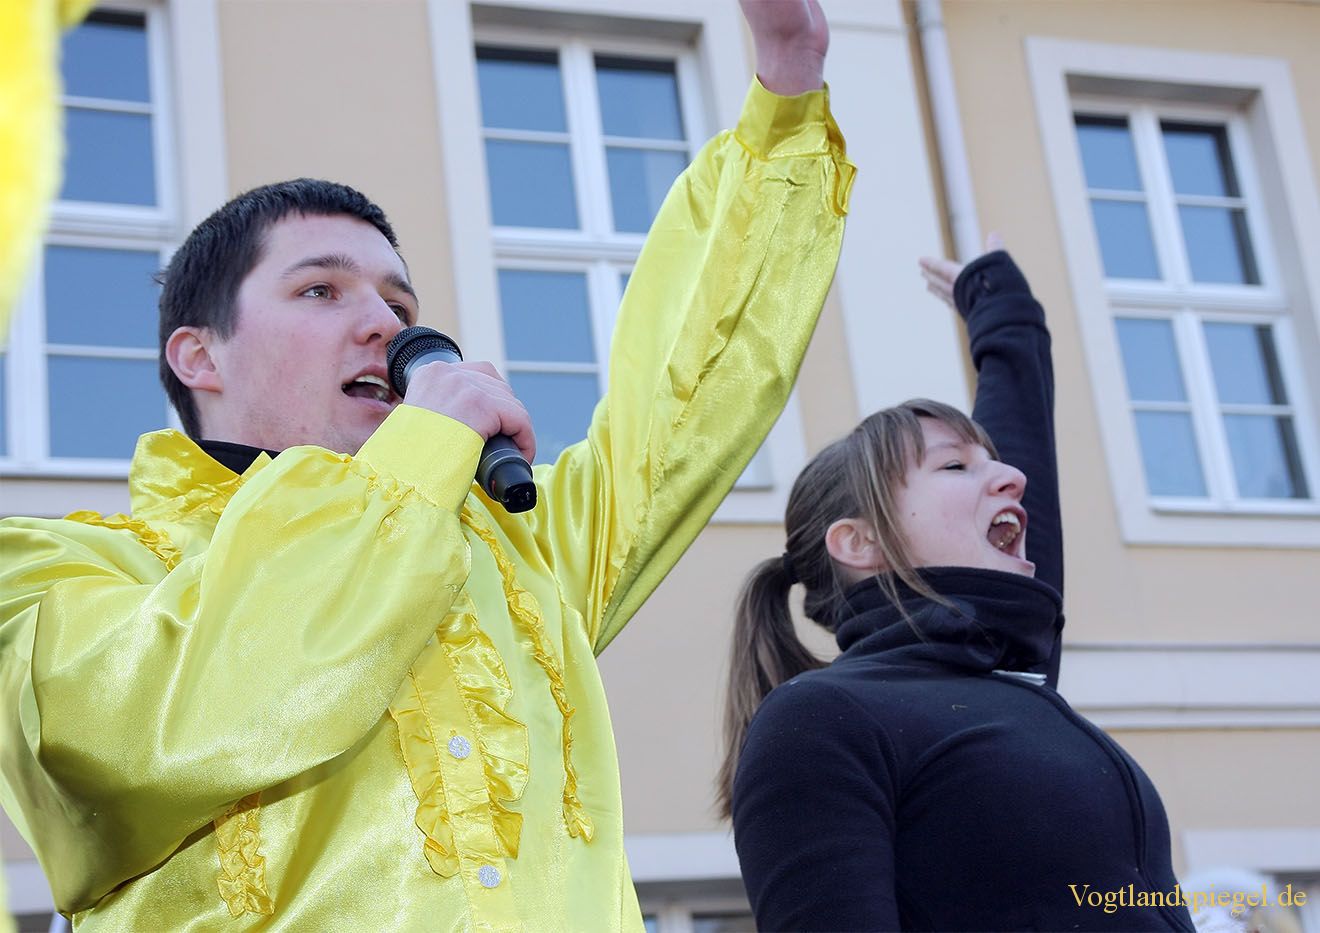 Mit Bühnenprogramm fand der Rosenmontagsumzug in Greiz seinen Höhepunkt